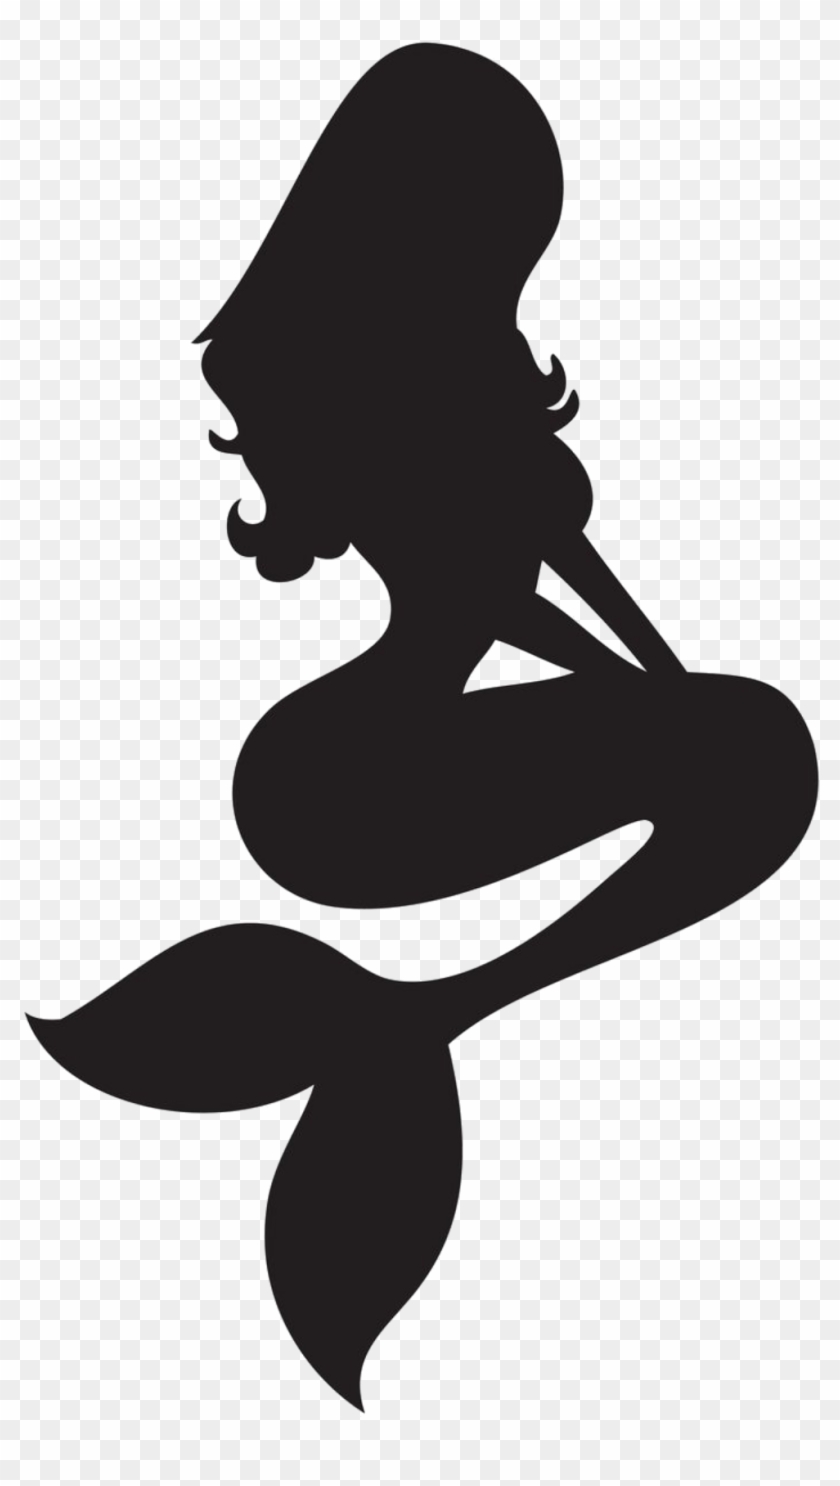 #mermaid #silhouette - Free Mermaid Silhouette Vector, HD ...